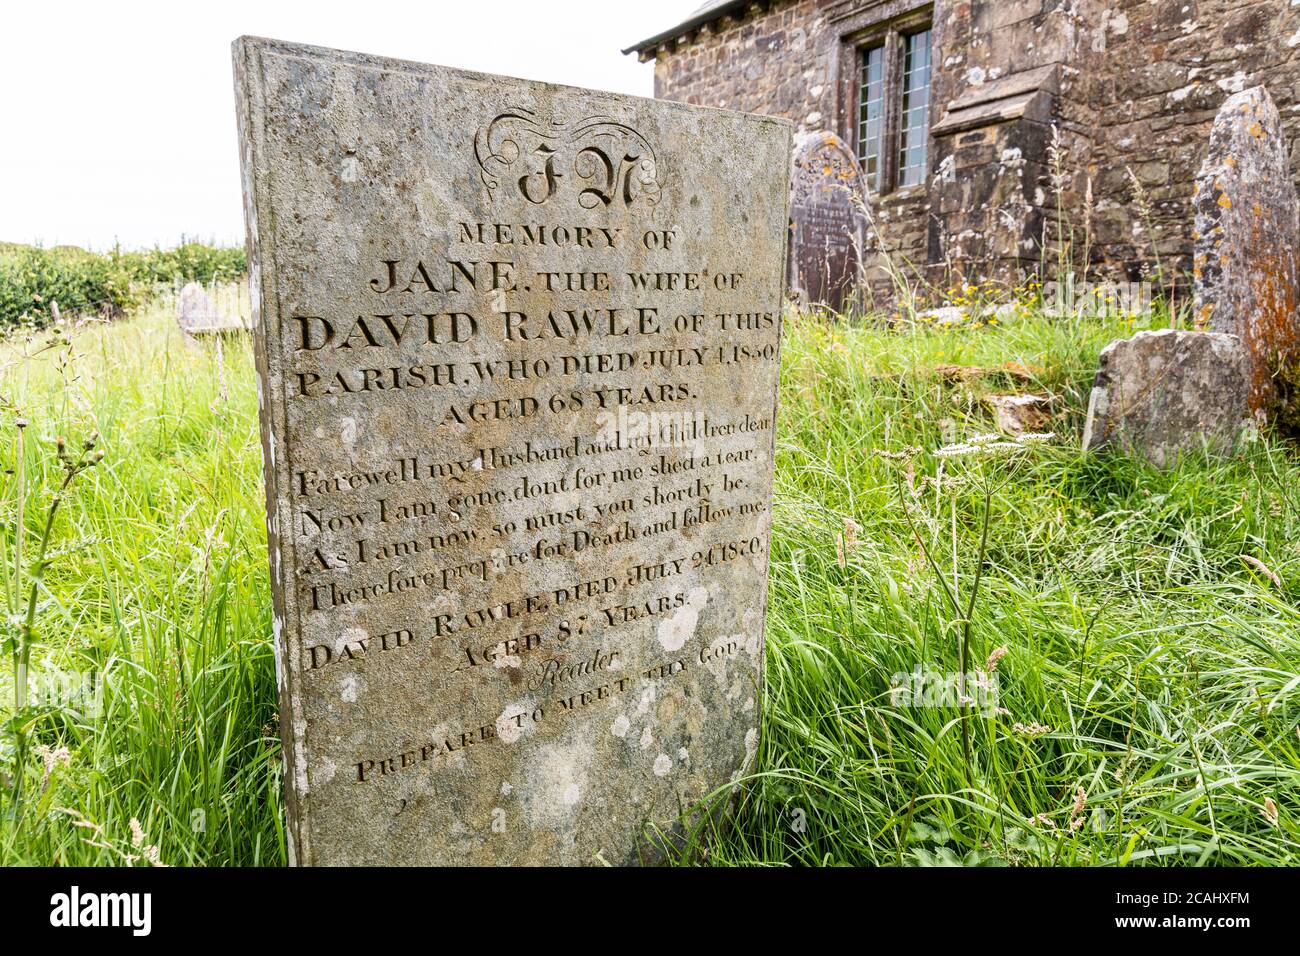 Exmoor National Park - 1850. Jahrhundert Grabstein von Jane Rawle (gestorben) im Kirchhof von Stoke Pero Kirche, Somerset UK - Bereiten Sie sich vor, Ihrem Gott zu begegnen Stockfoto